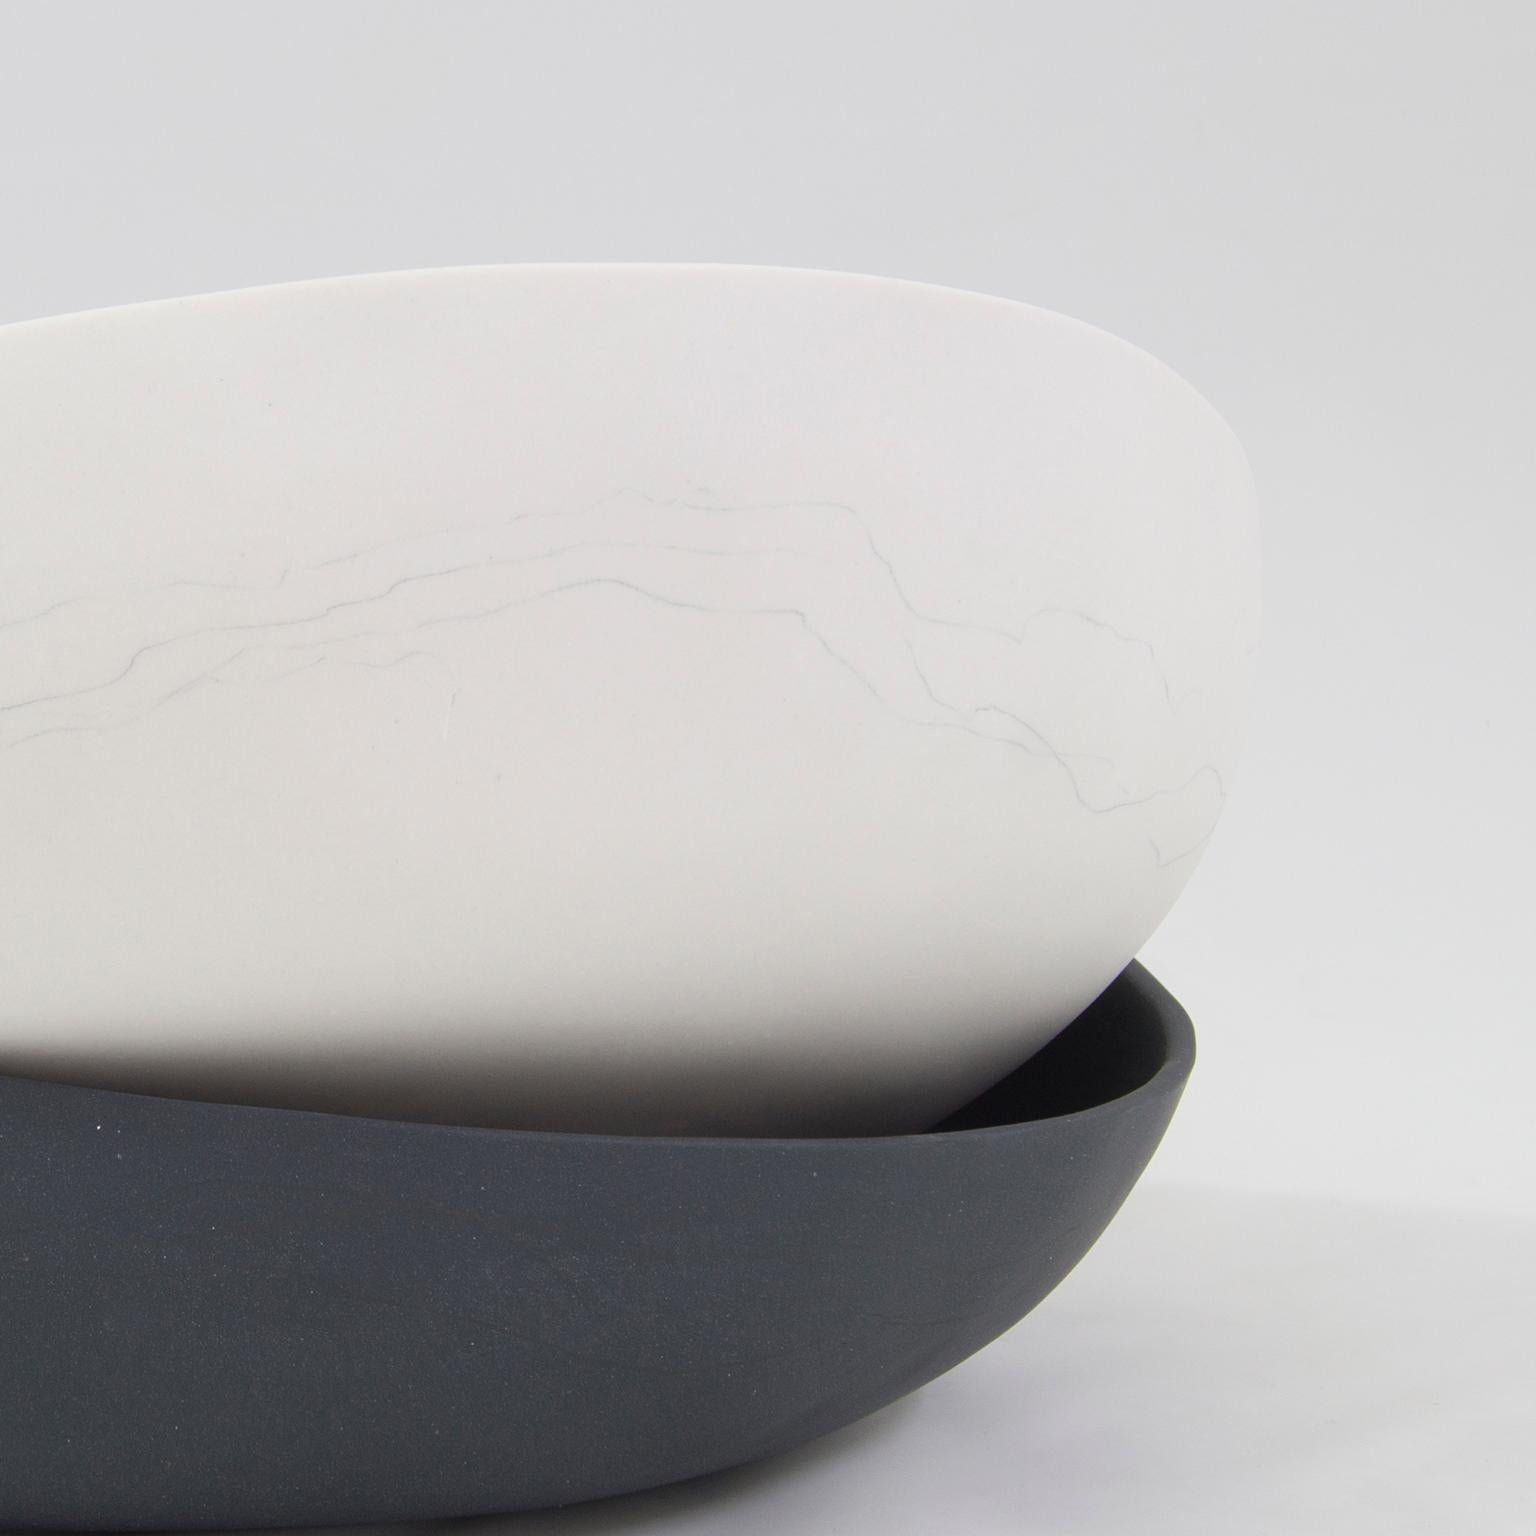 Minimalist Contemporary Decorative Bowls Matte Black/White Porcelain For Sale